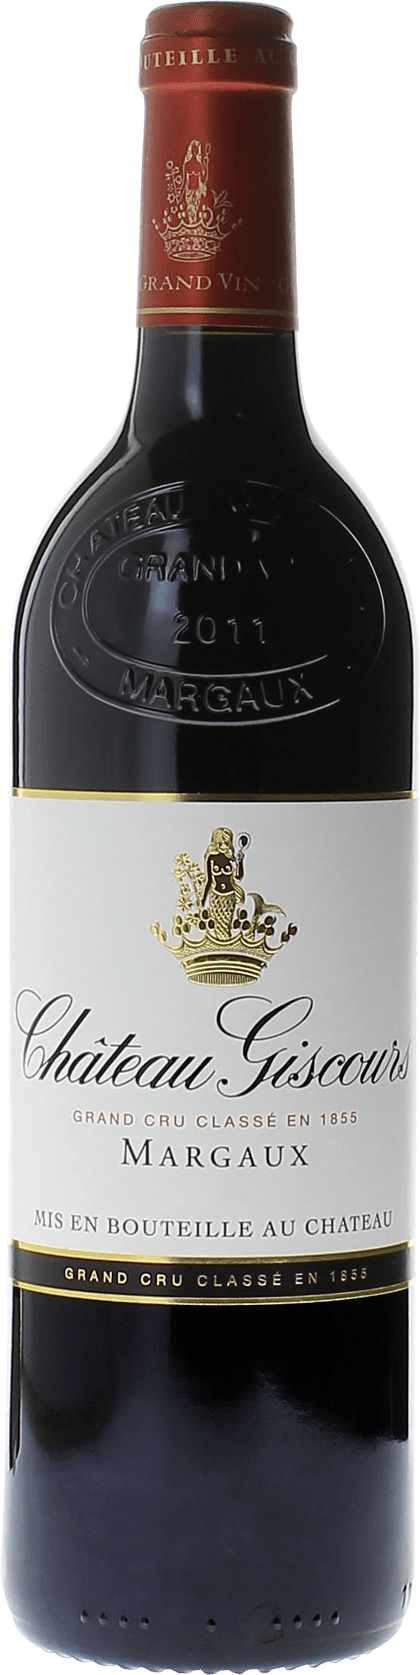 Giscours 1992 3me Grand cru class Margaux, Bordeaux rouge